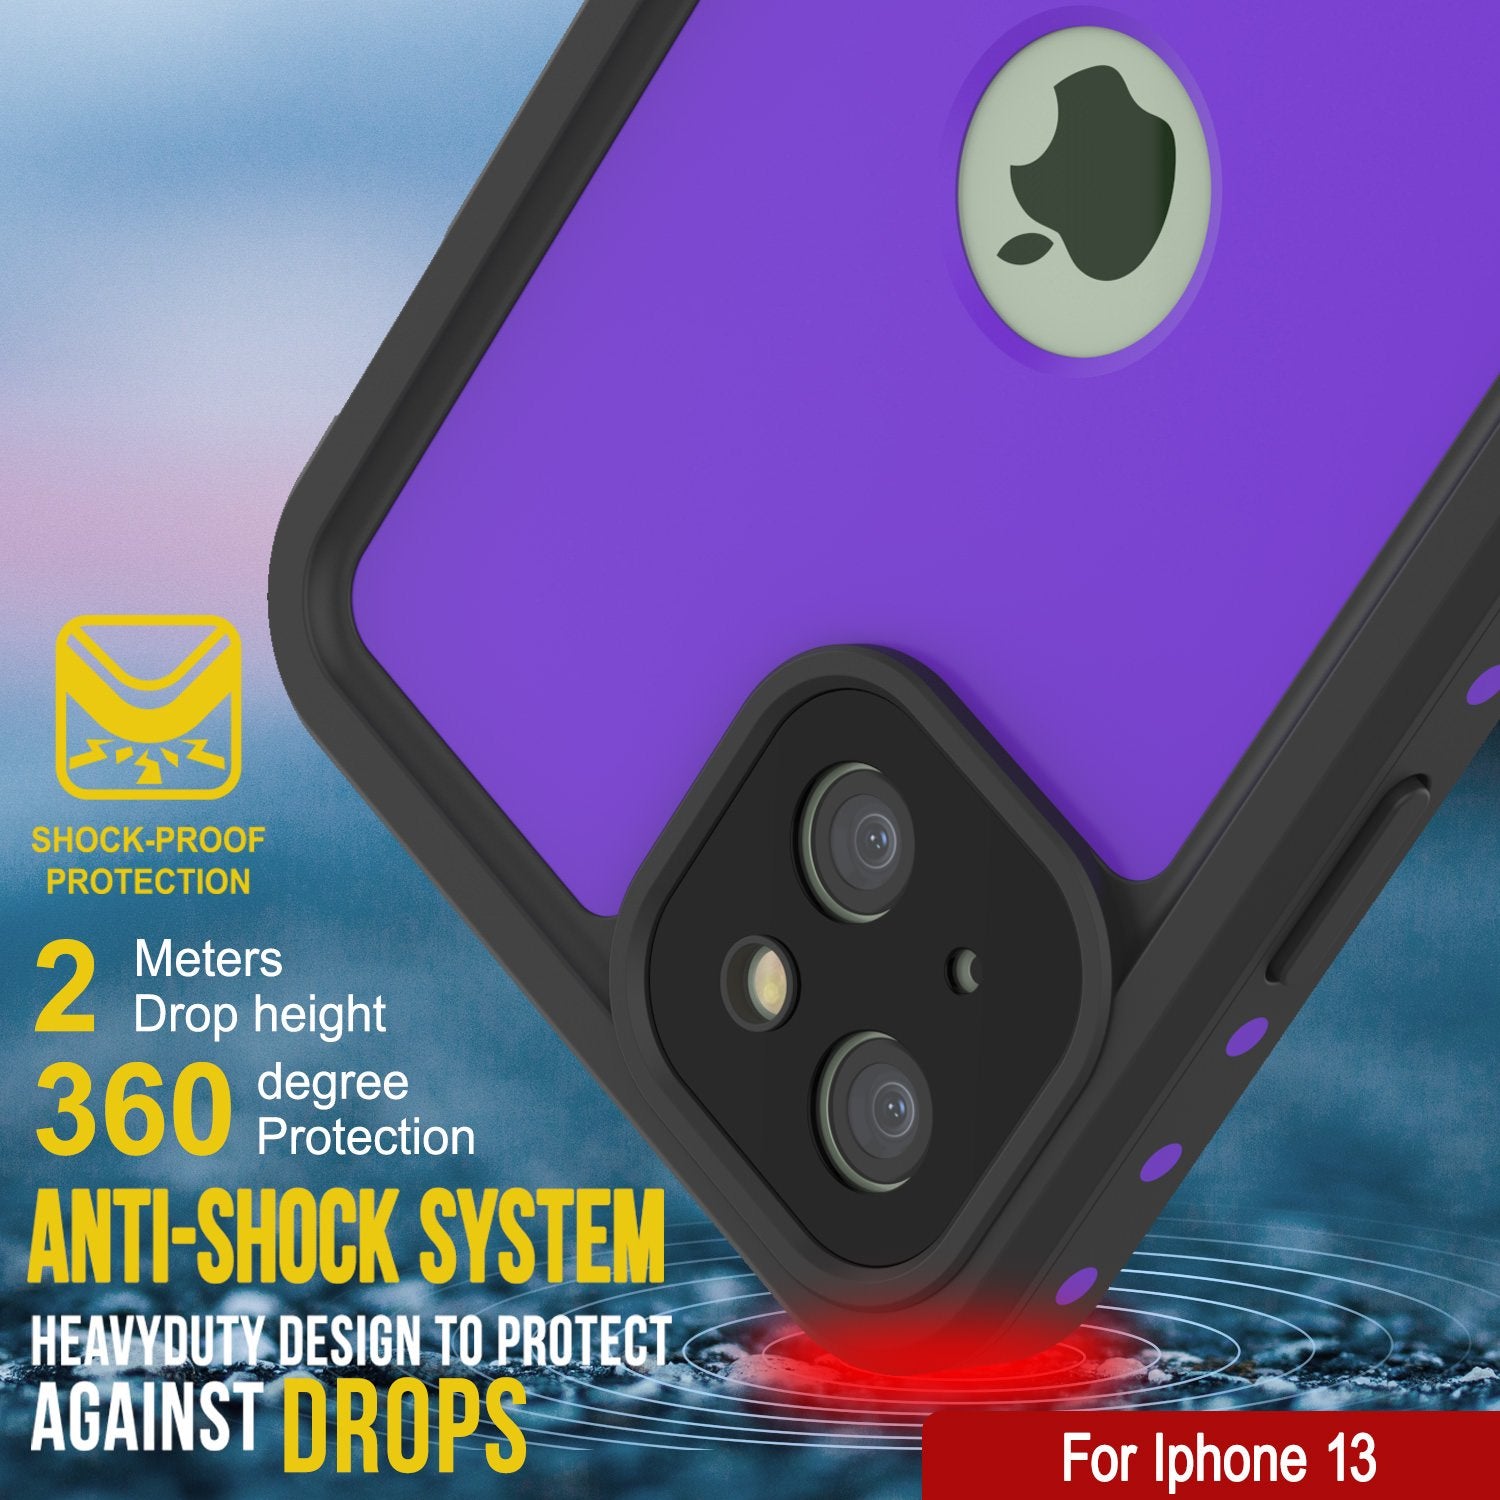 iPhone 13 Waterproof IP68 Case, Punkcase [Purple] [StudStar Series] [Slim Fit] [Dirtproof]